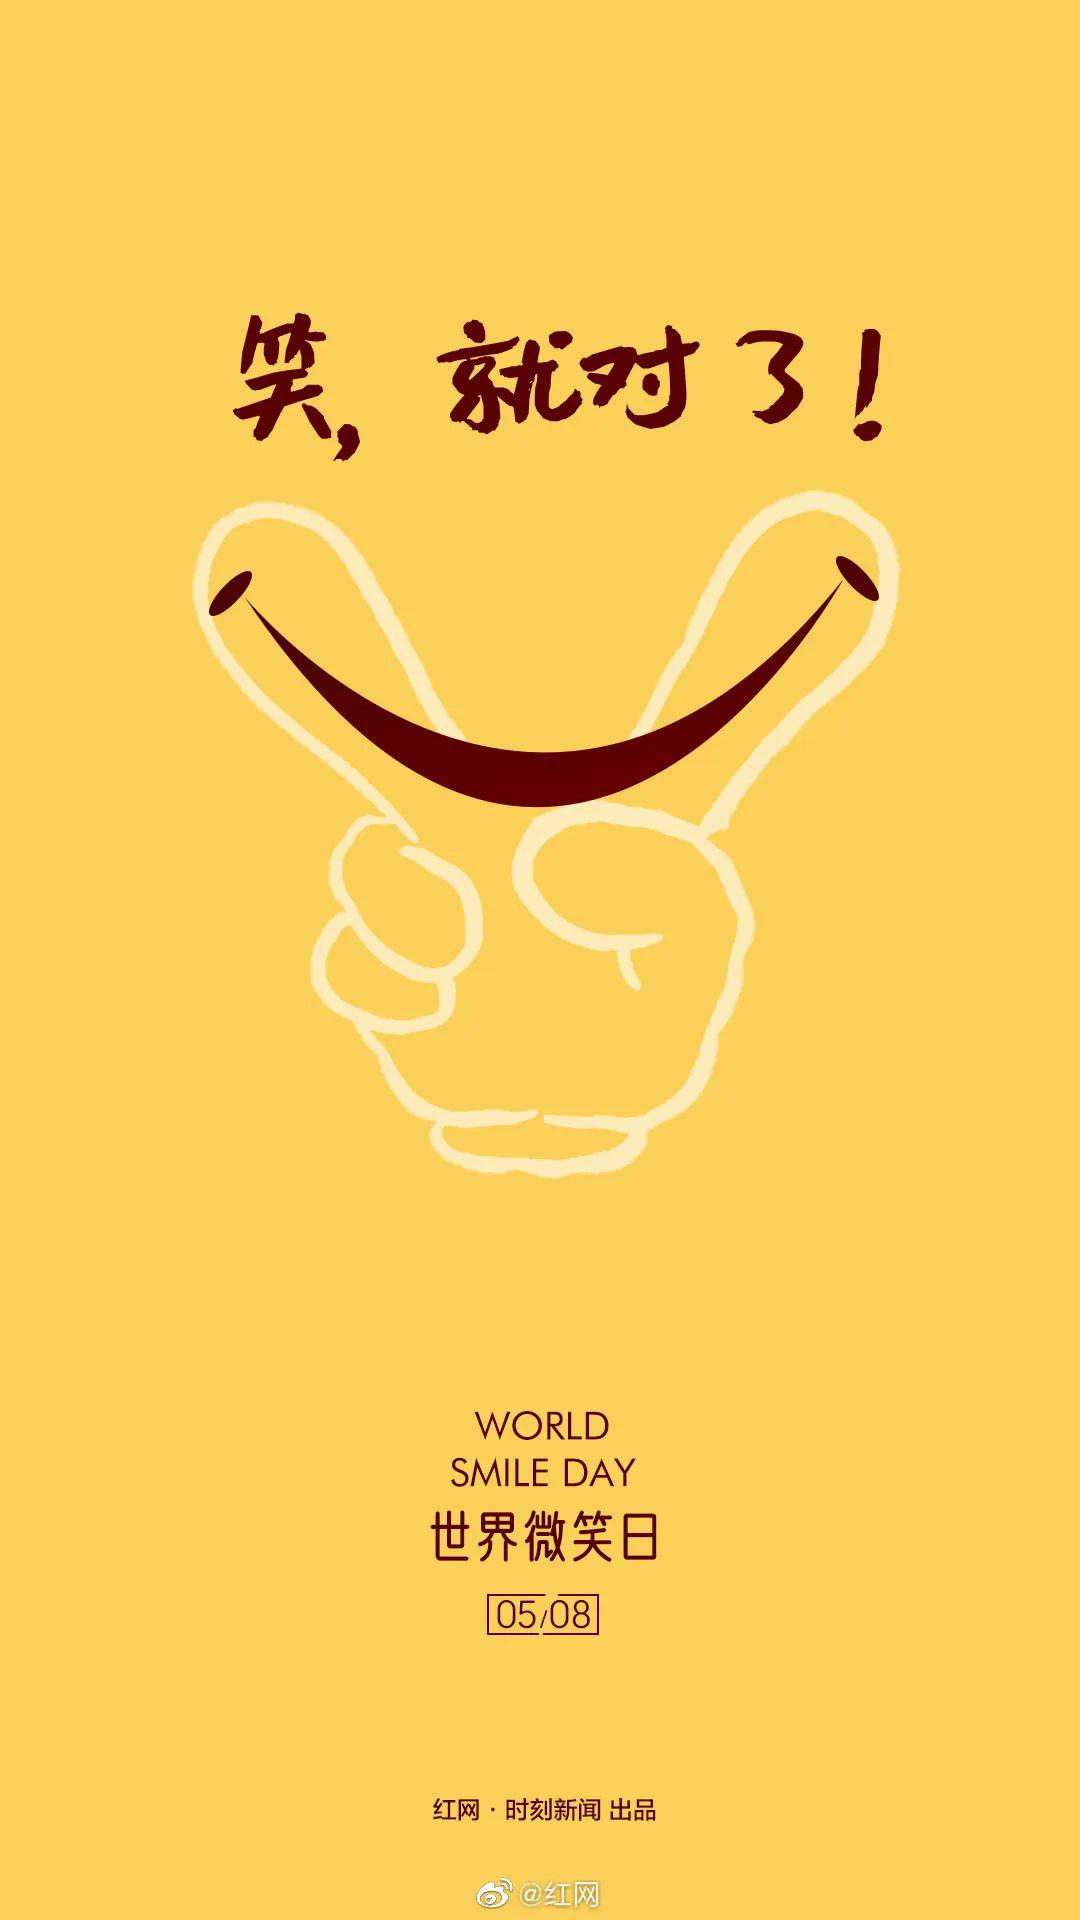 今天世界微笑日各品牌海报,你笑起来真好看!